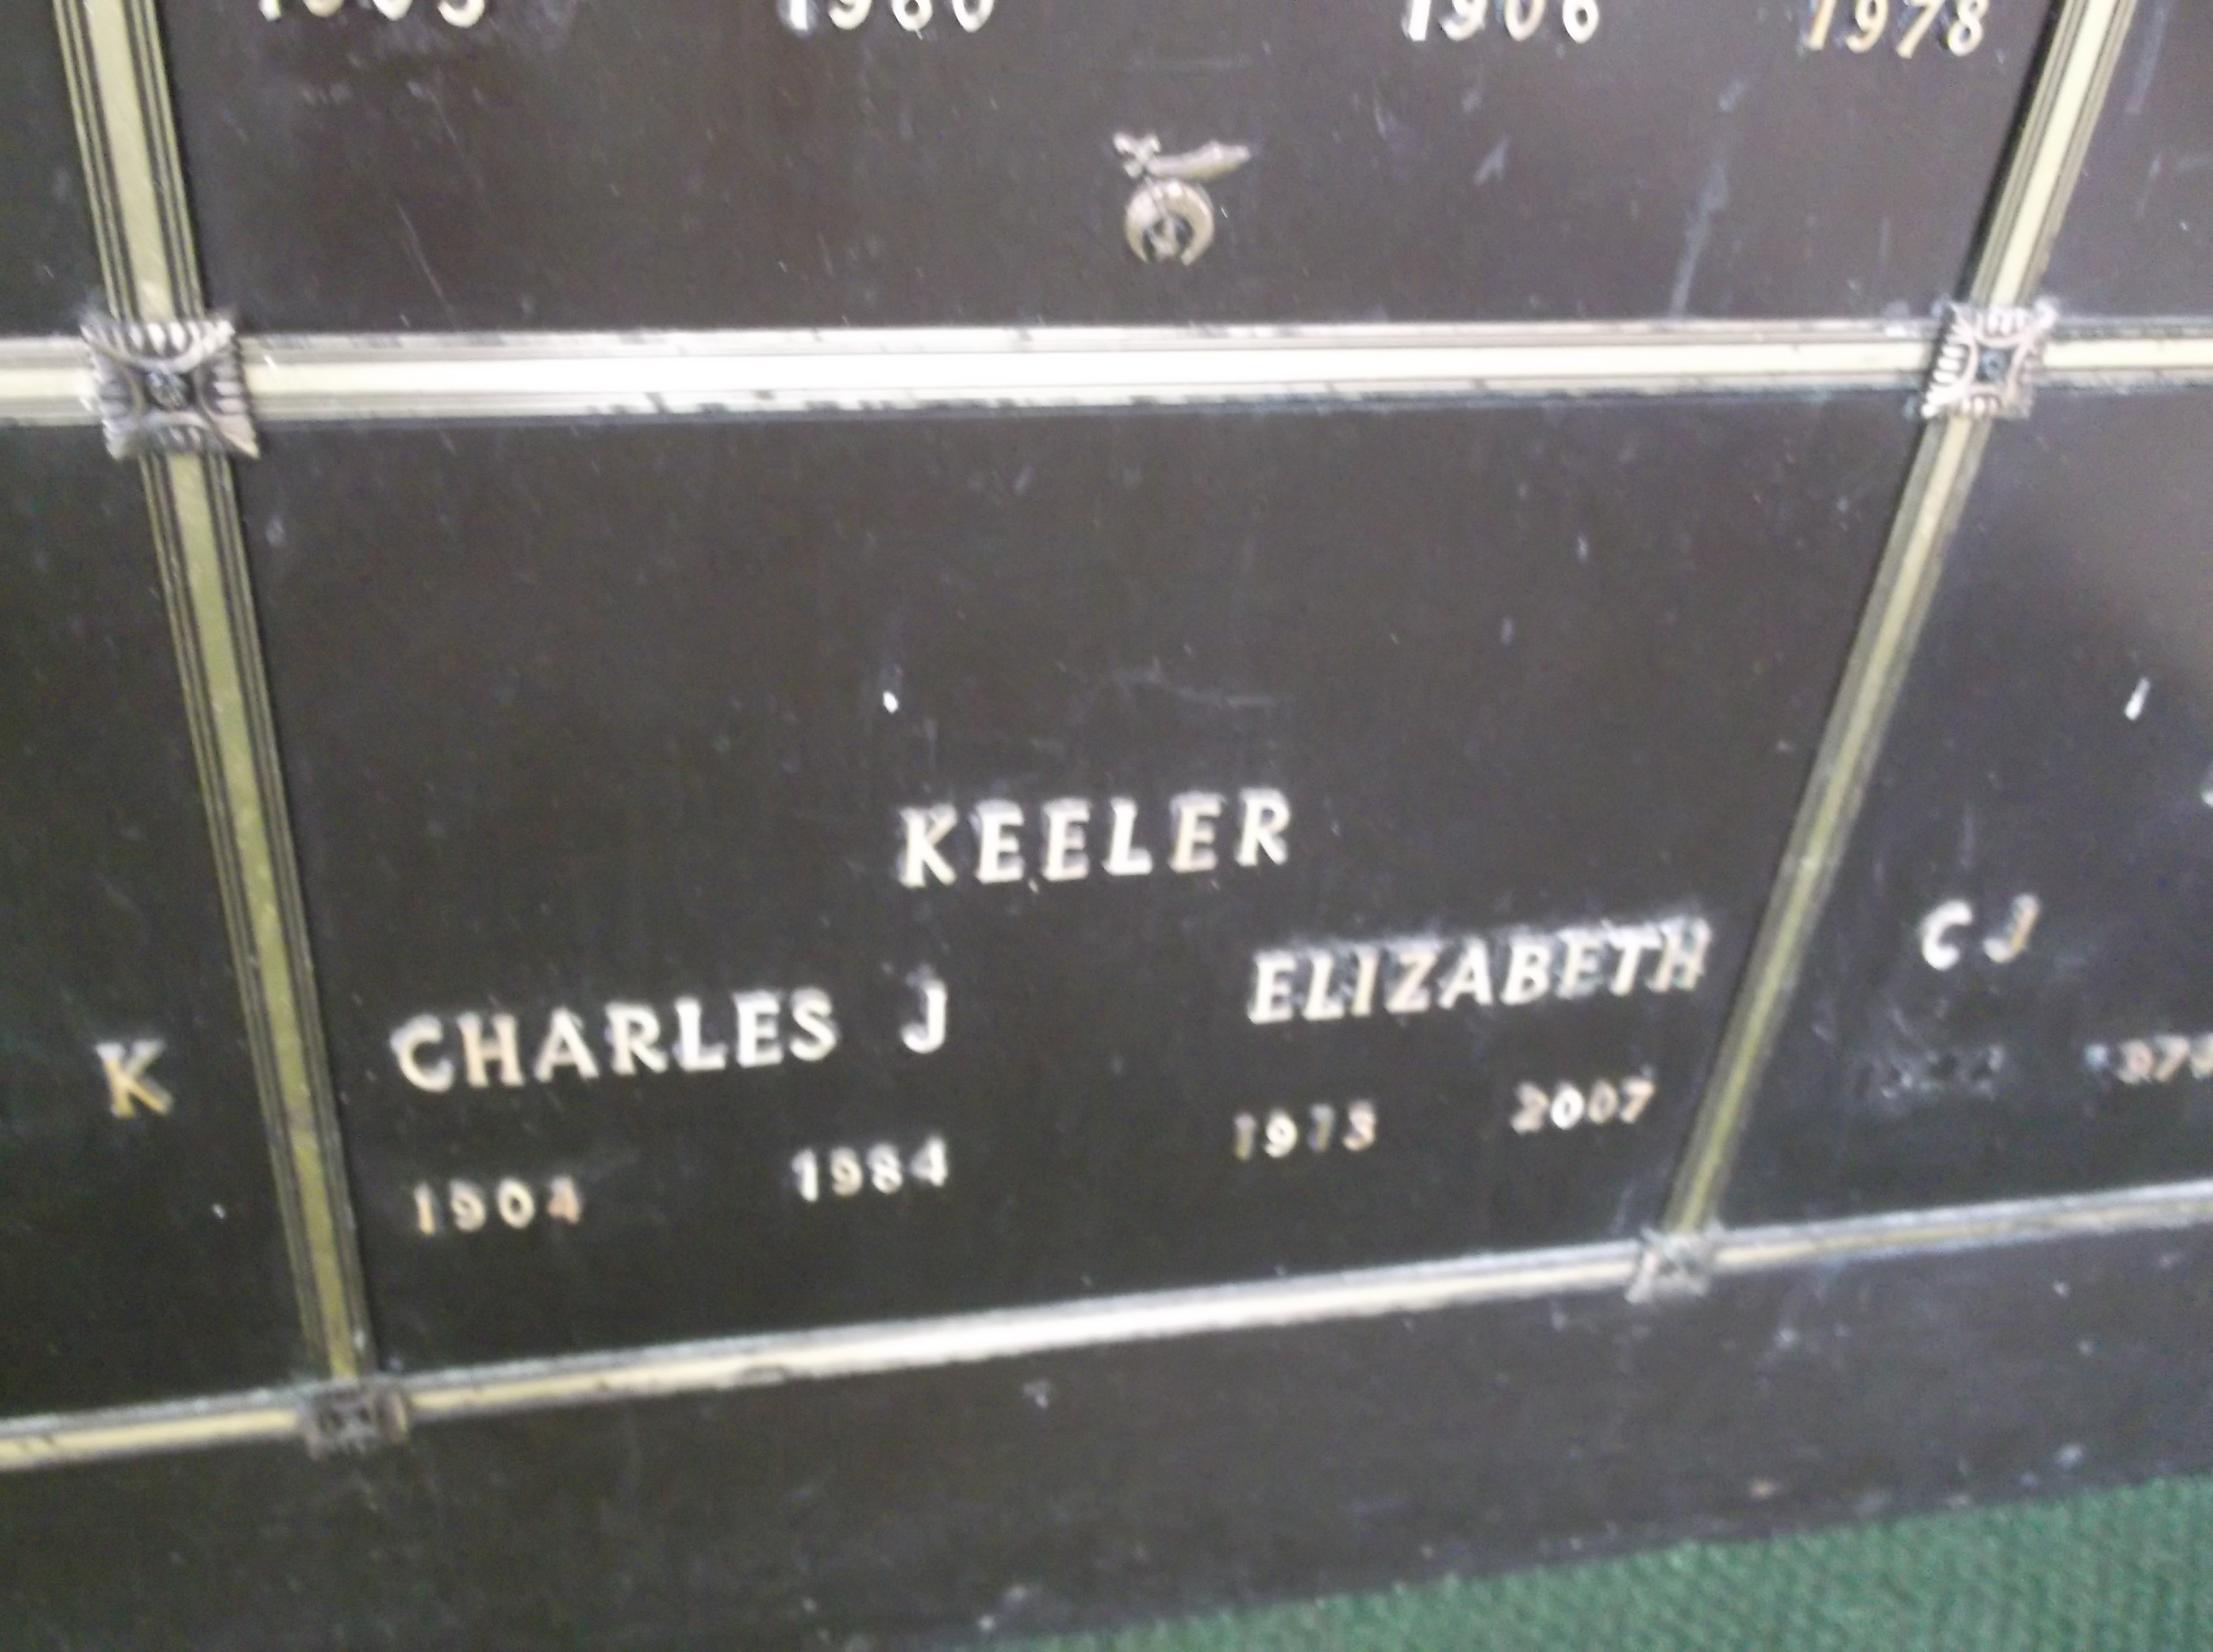 Elizabeth Keeler